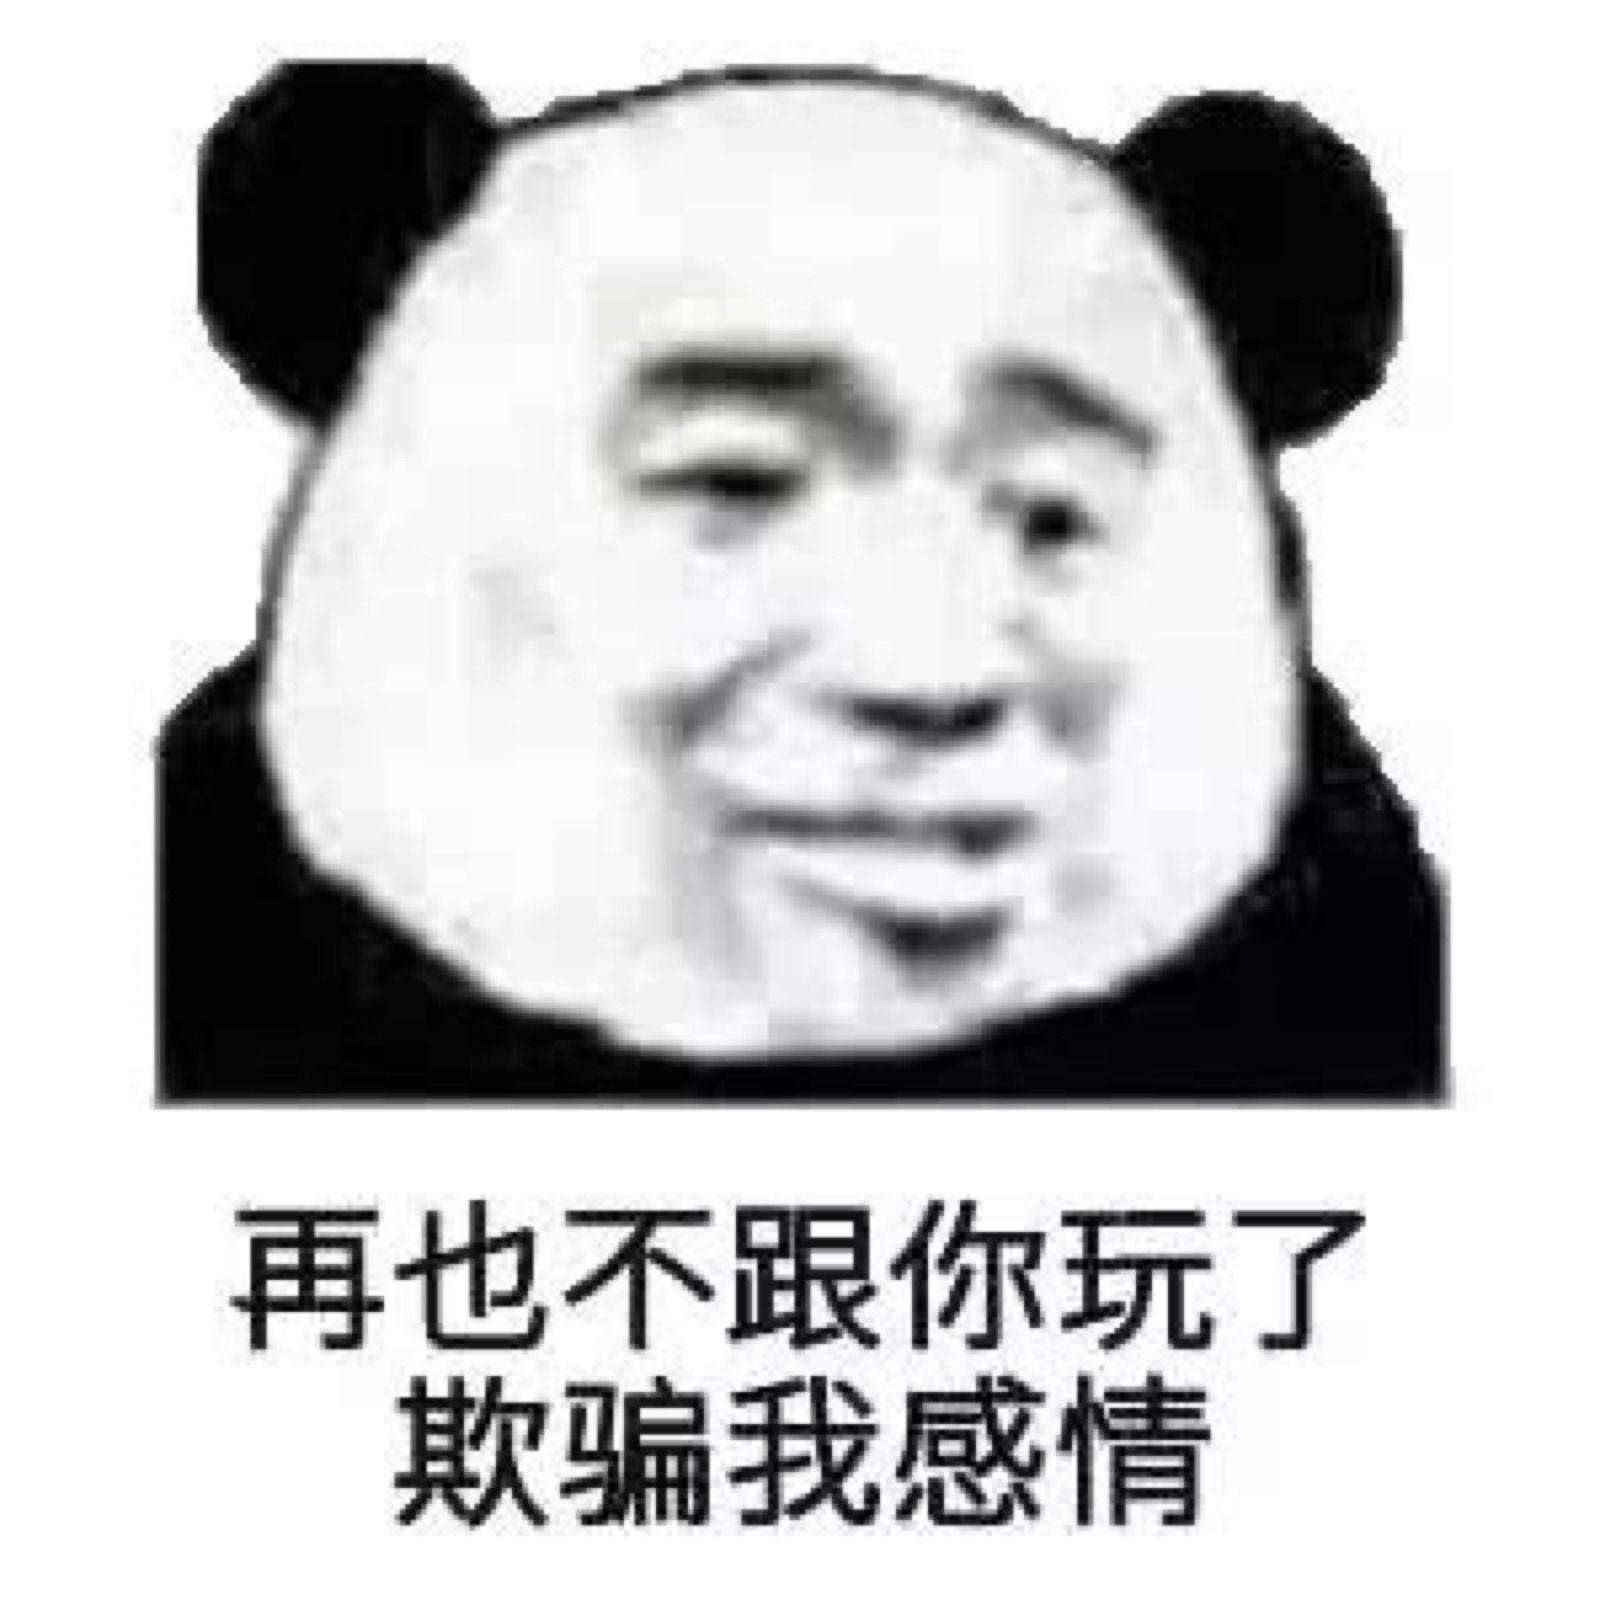 男生熊猫人扭曲头像 - 沙雕熊猫人情头 - 发表情 - fabiaoqing.com